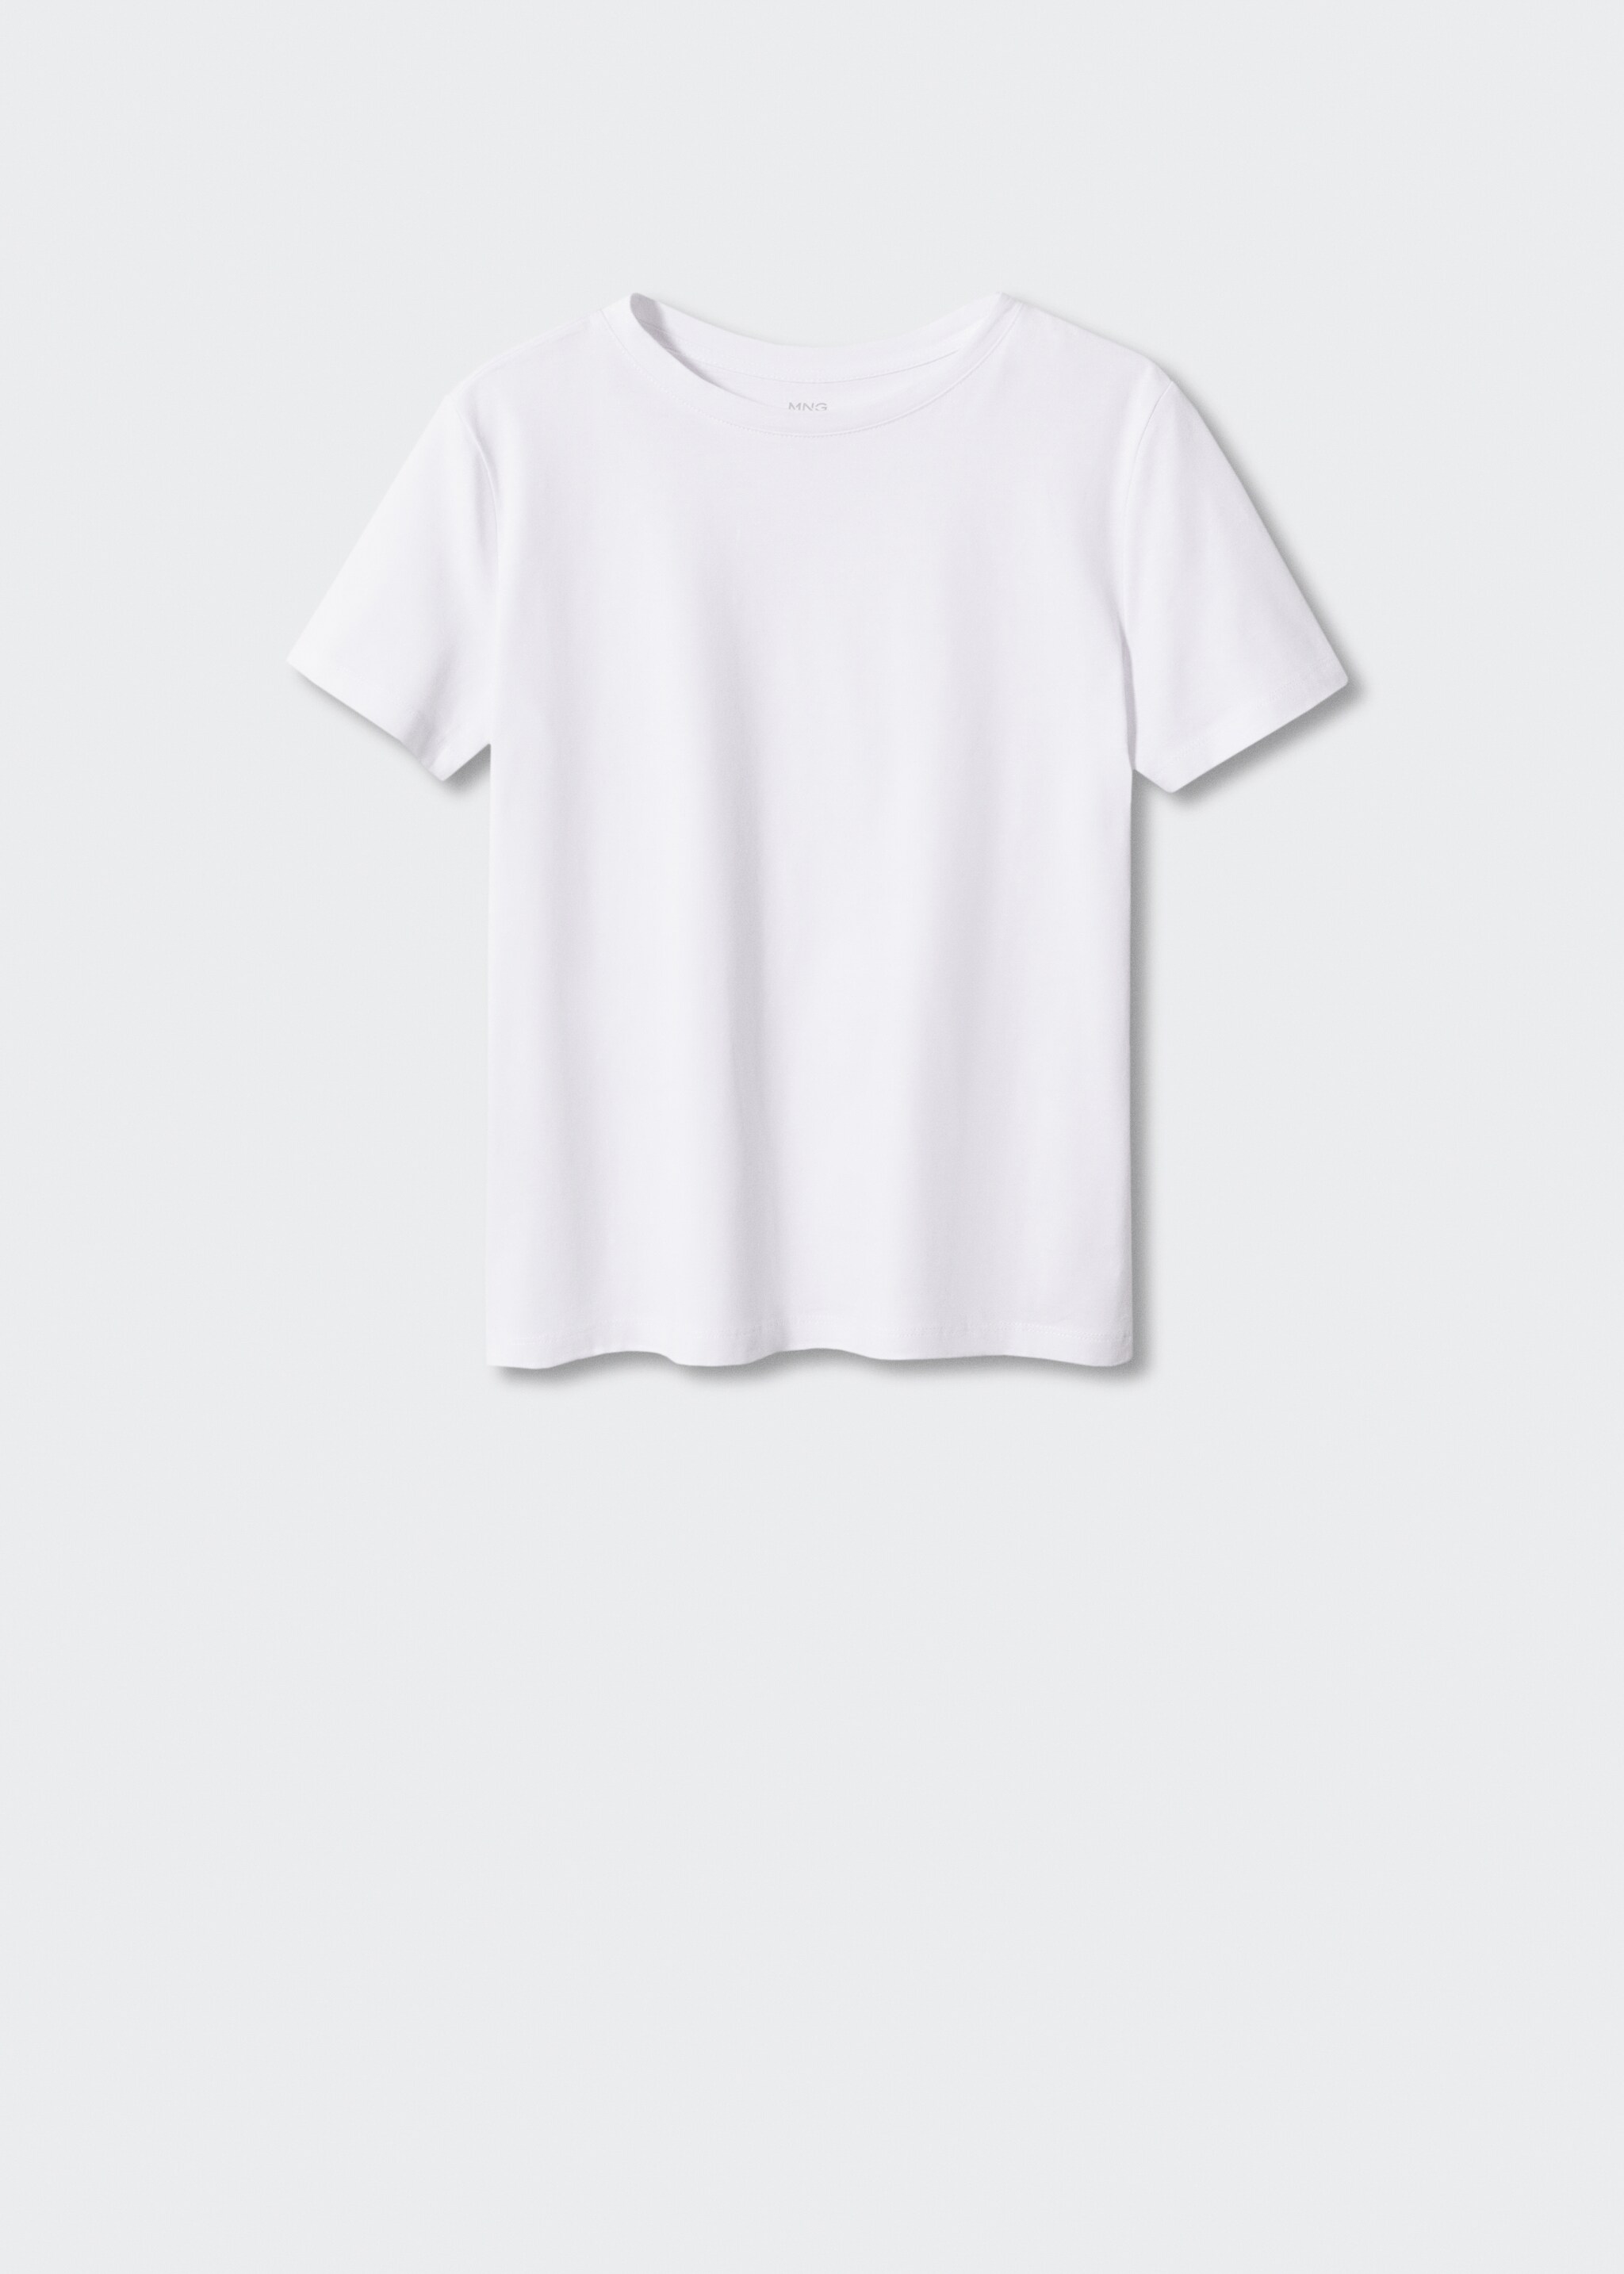 Maglietta 100% cotone  - Articolo senza modello